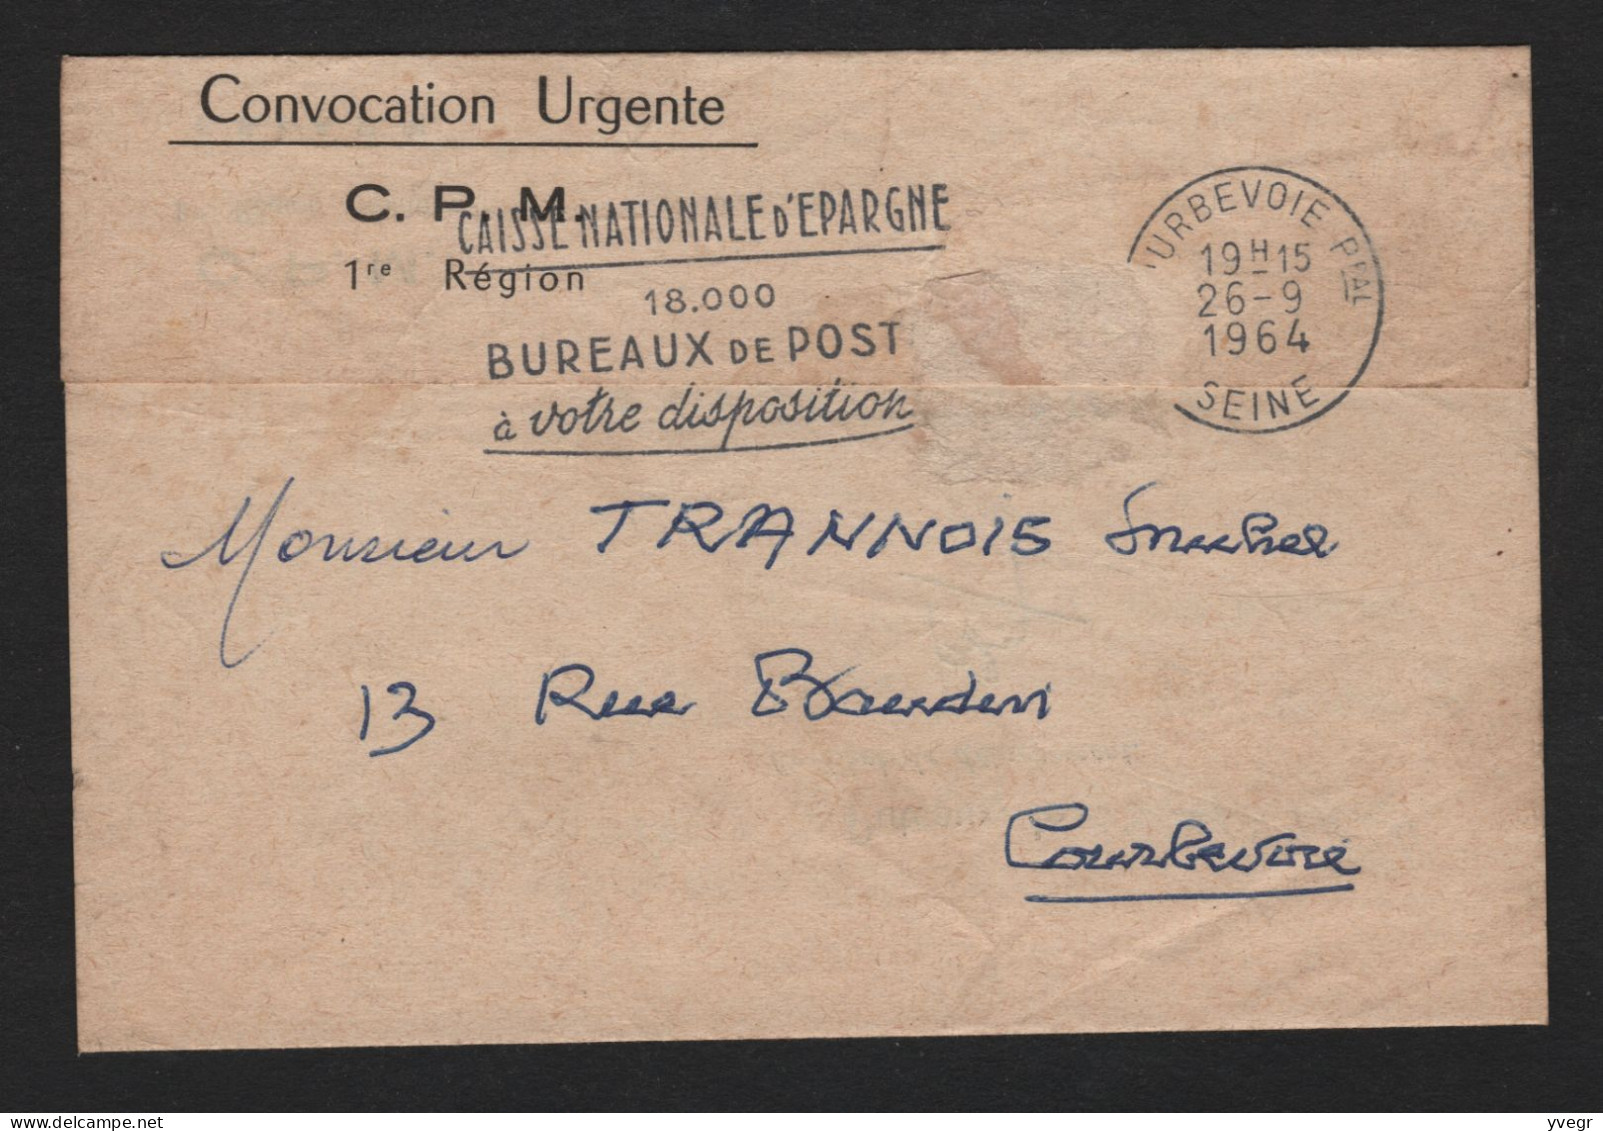 Militaria - Convocation URGENTE - C.P.M. 1re Région Militaire - E.S.I.A.P.M - à Puteaux Le 28 Septembre 1964 - Historische Dokumente